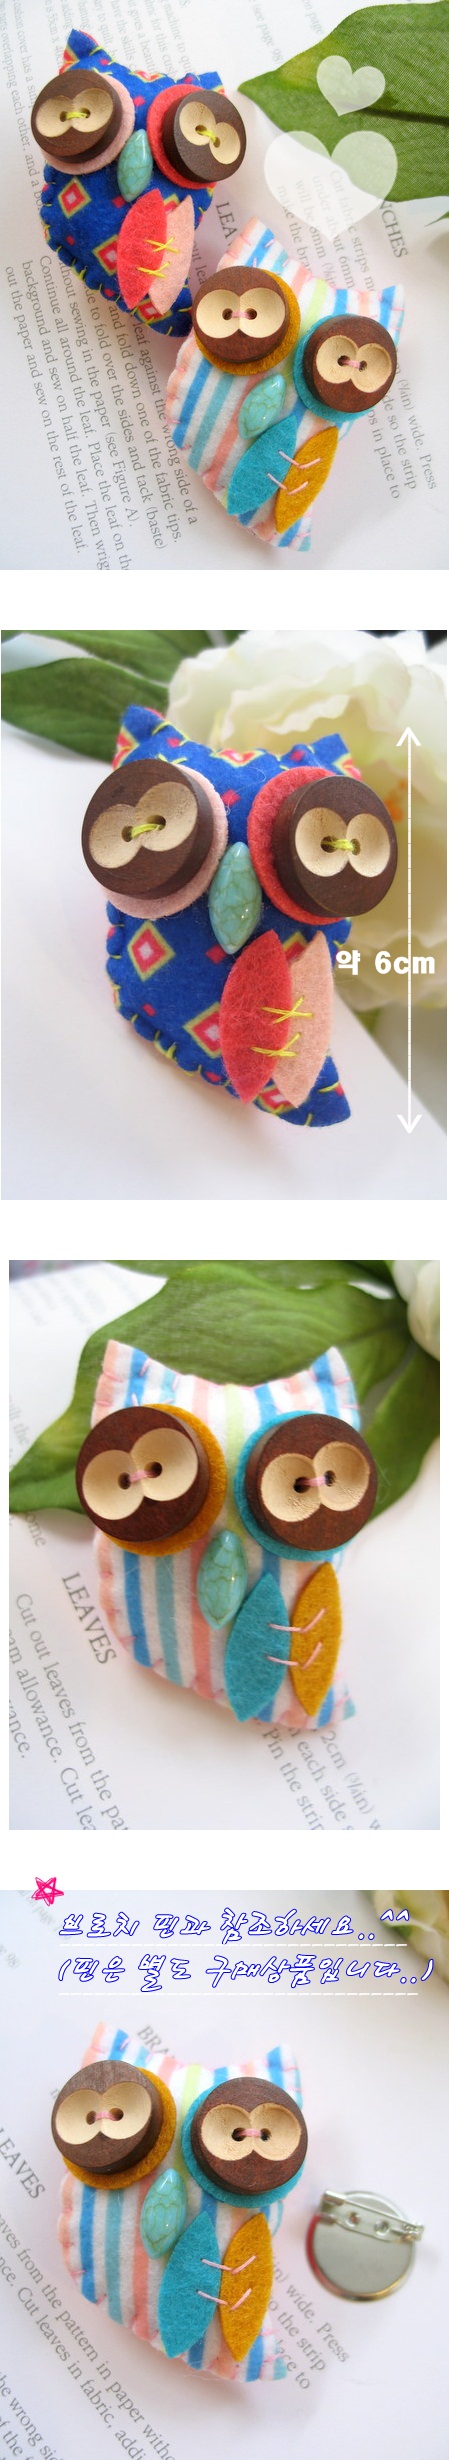 핸드메이드봉제와펜]귀요미단추부엉이-2color